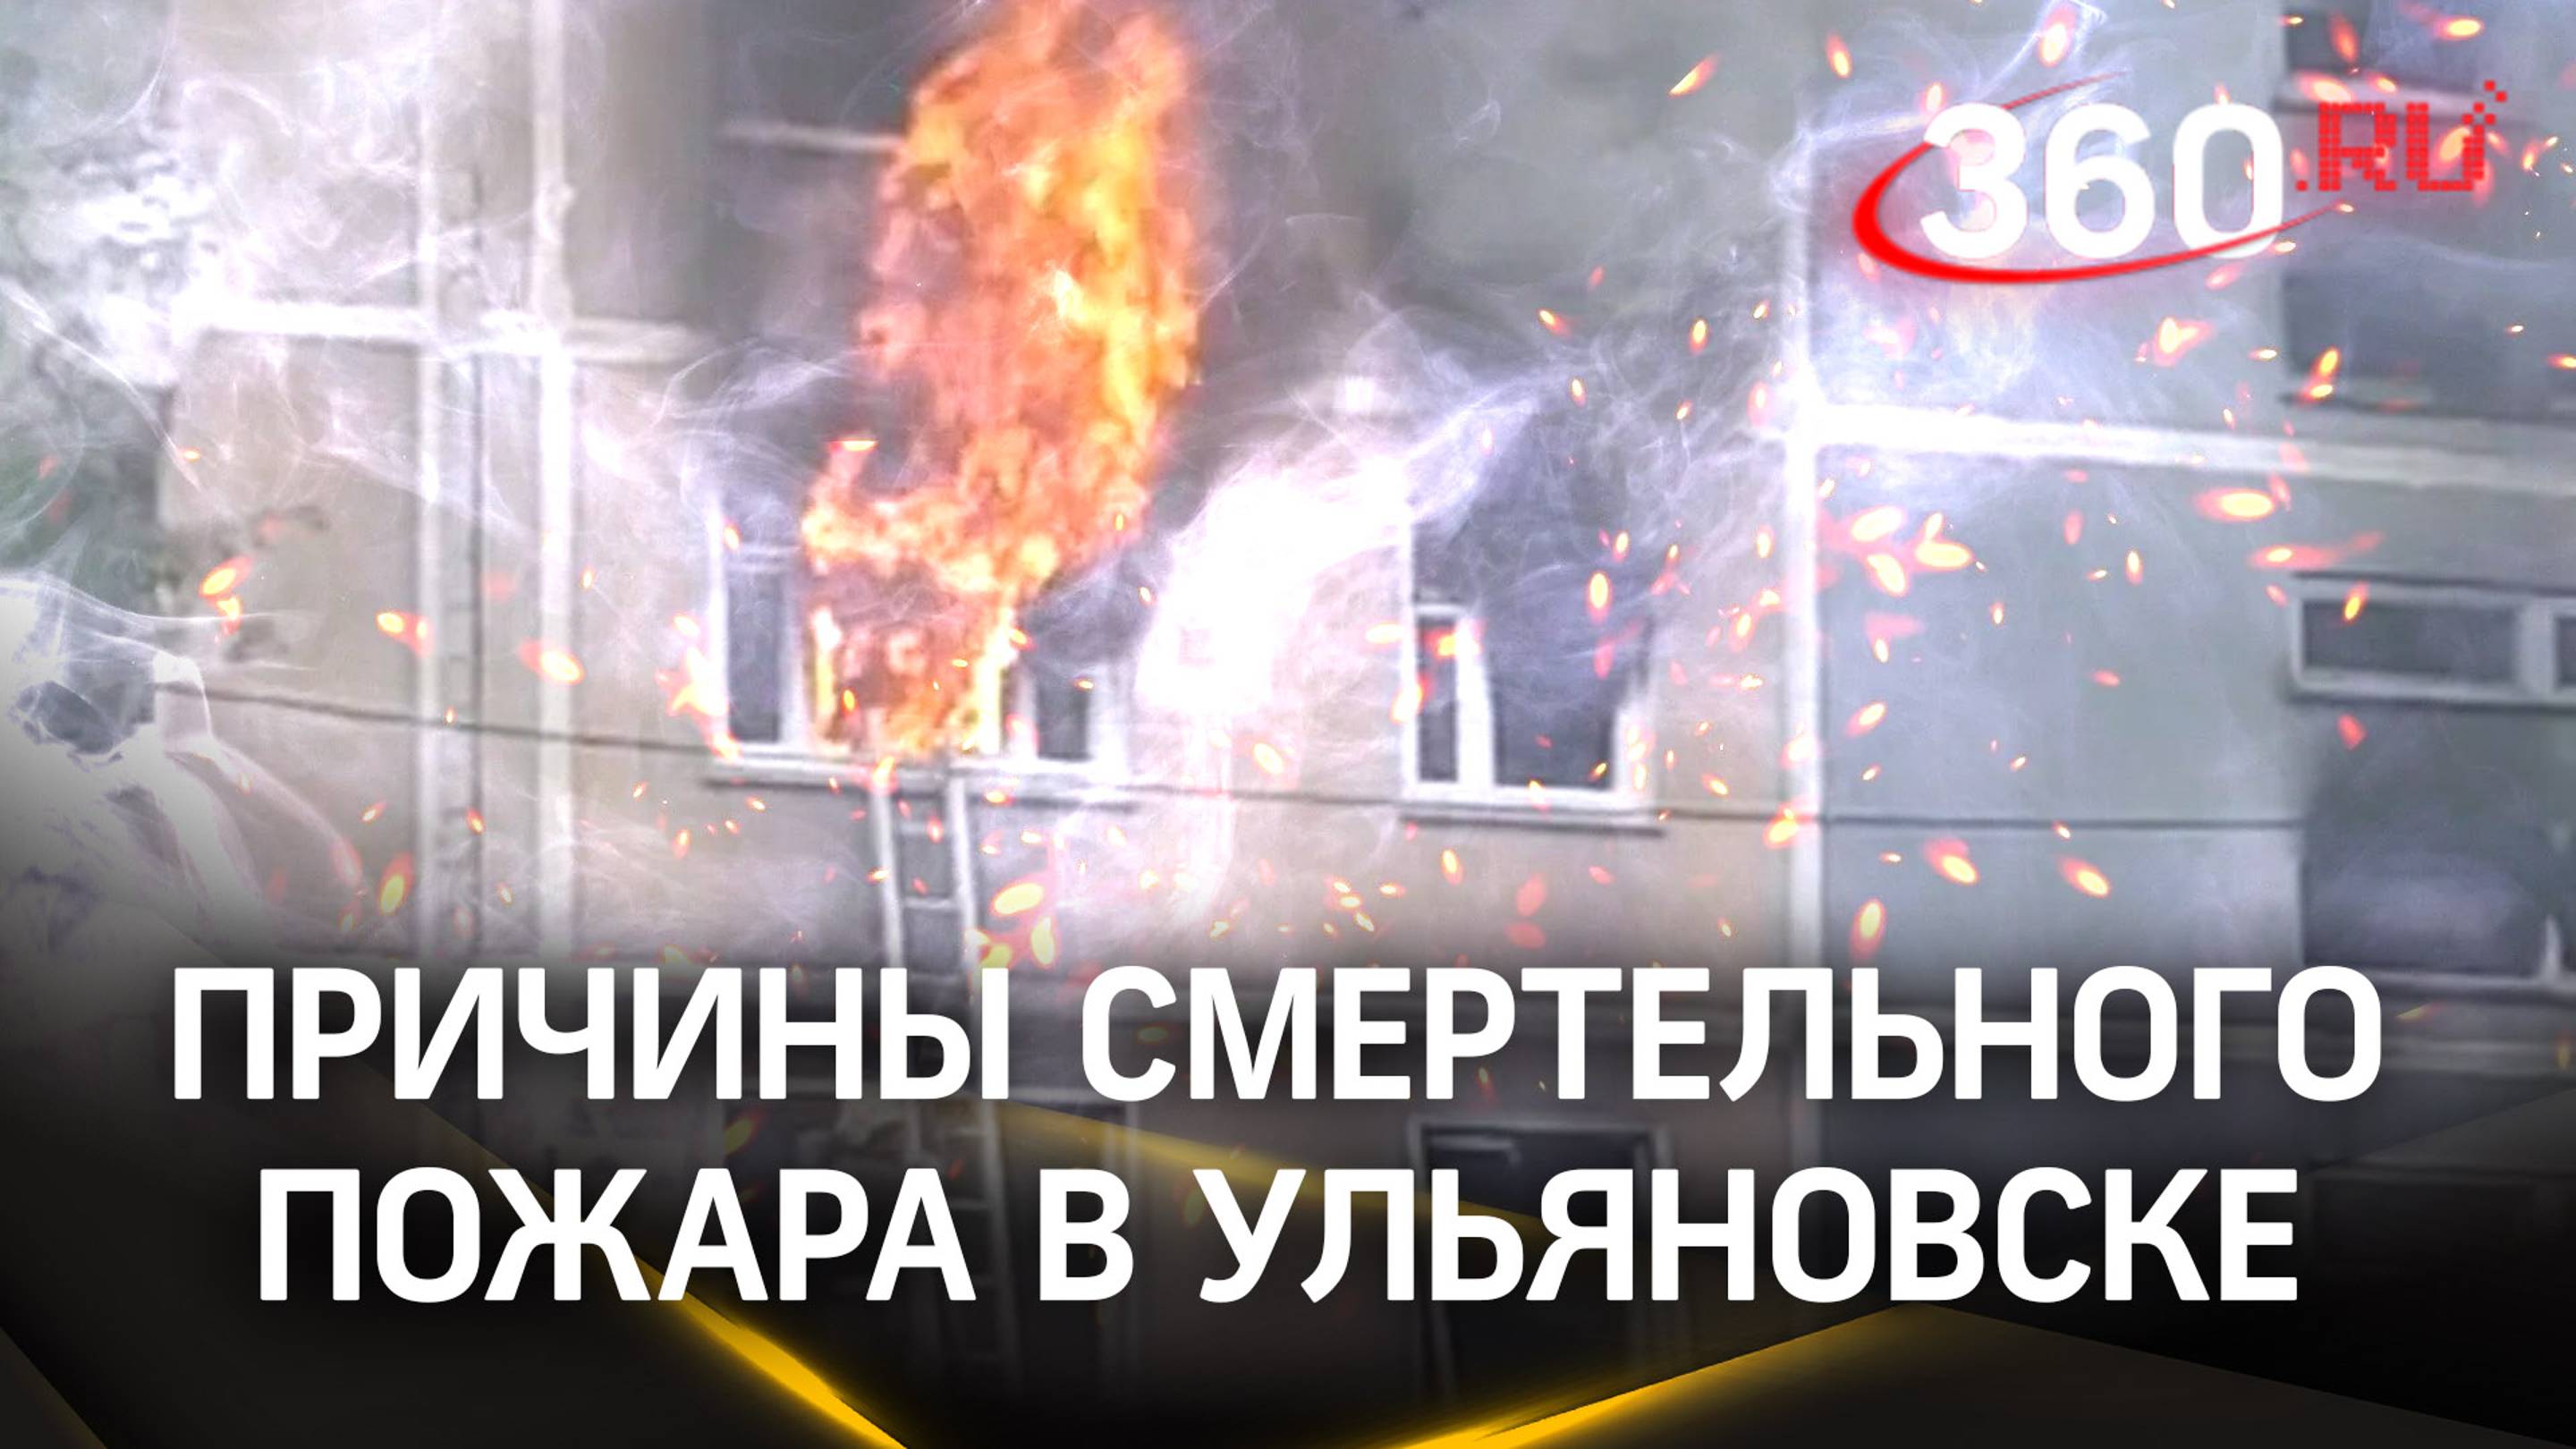 Самогонный аппарат стал причиной пожара в многоэтажке в Ульяновске. Три человека погибли